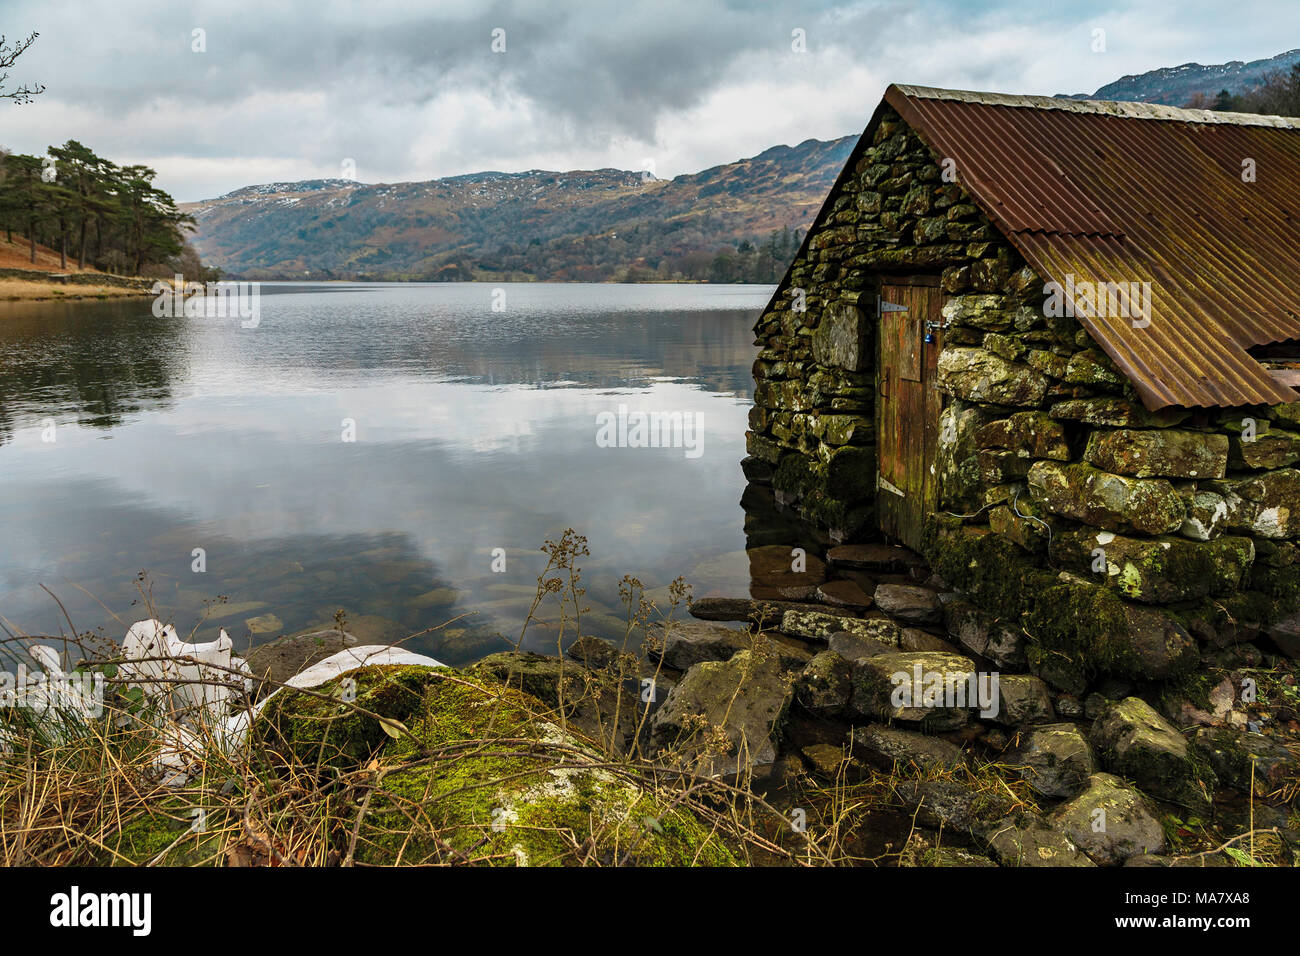 Llyn Gwynant Boathouse e resti, Snowdonia National Park, il Galles del Nord, Regno Unito. Foto Stock